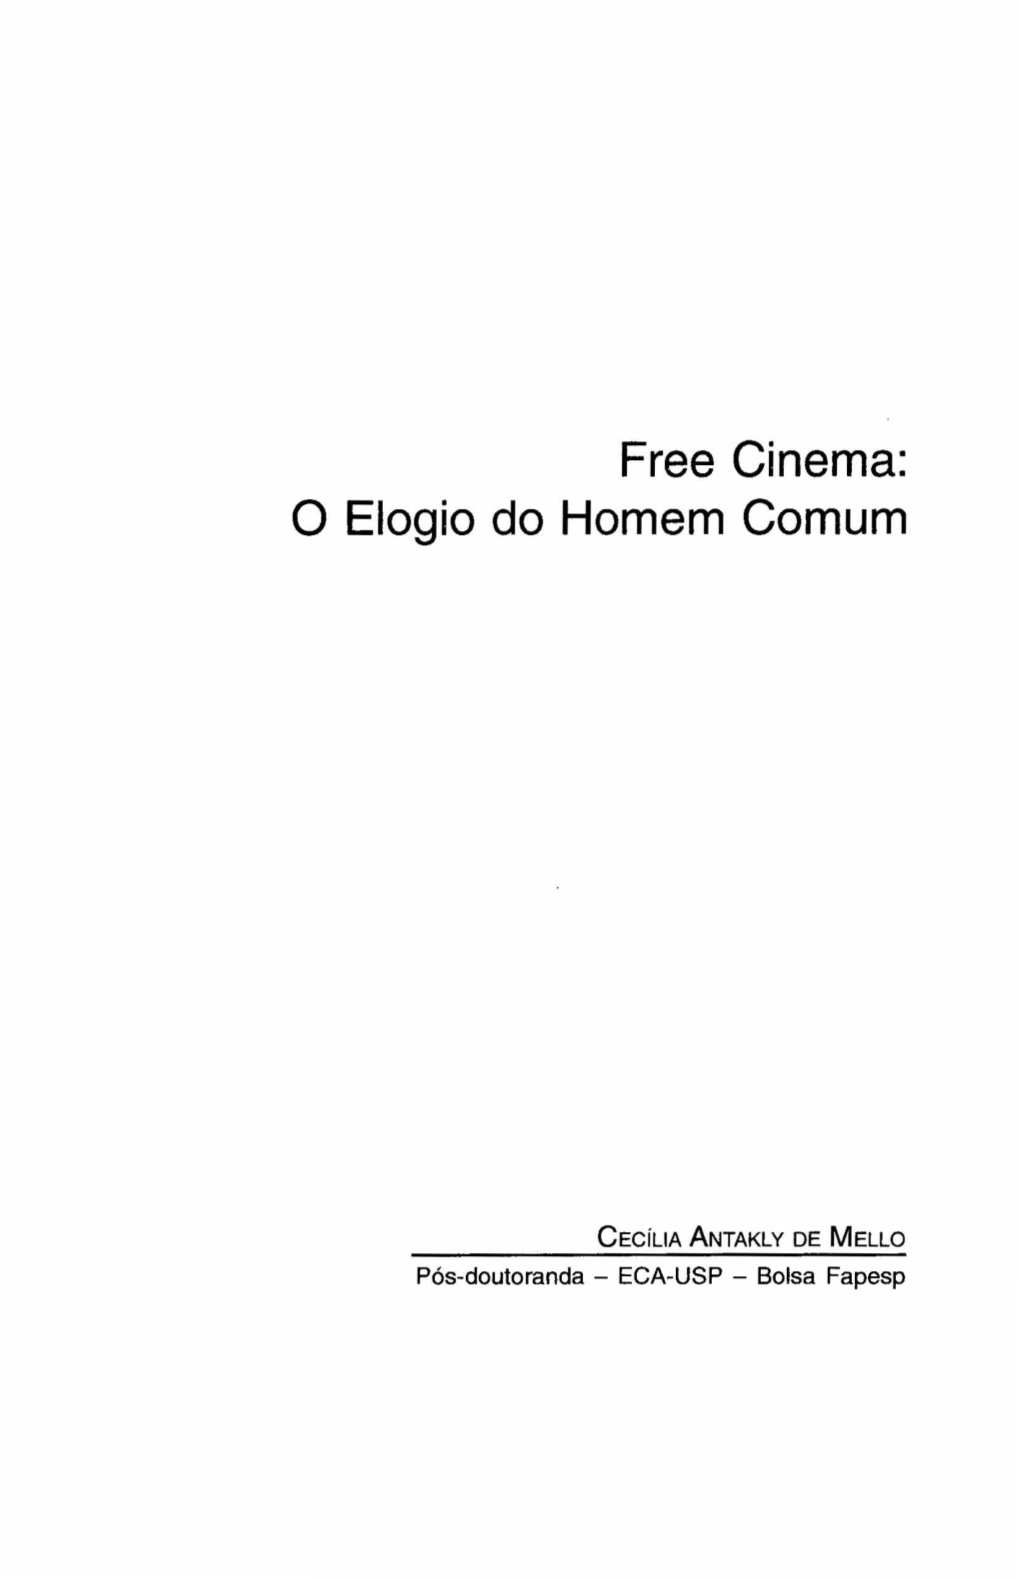 Free Cinema: O Elogio Do Homem Comum